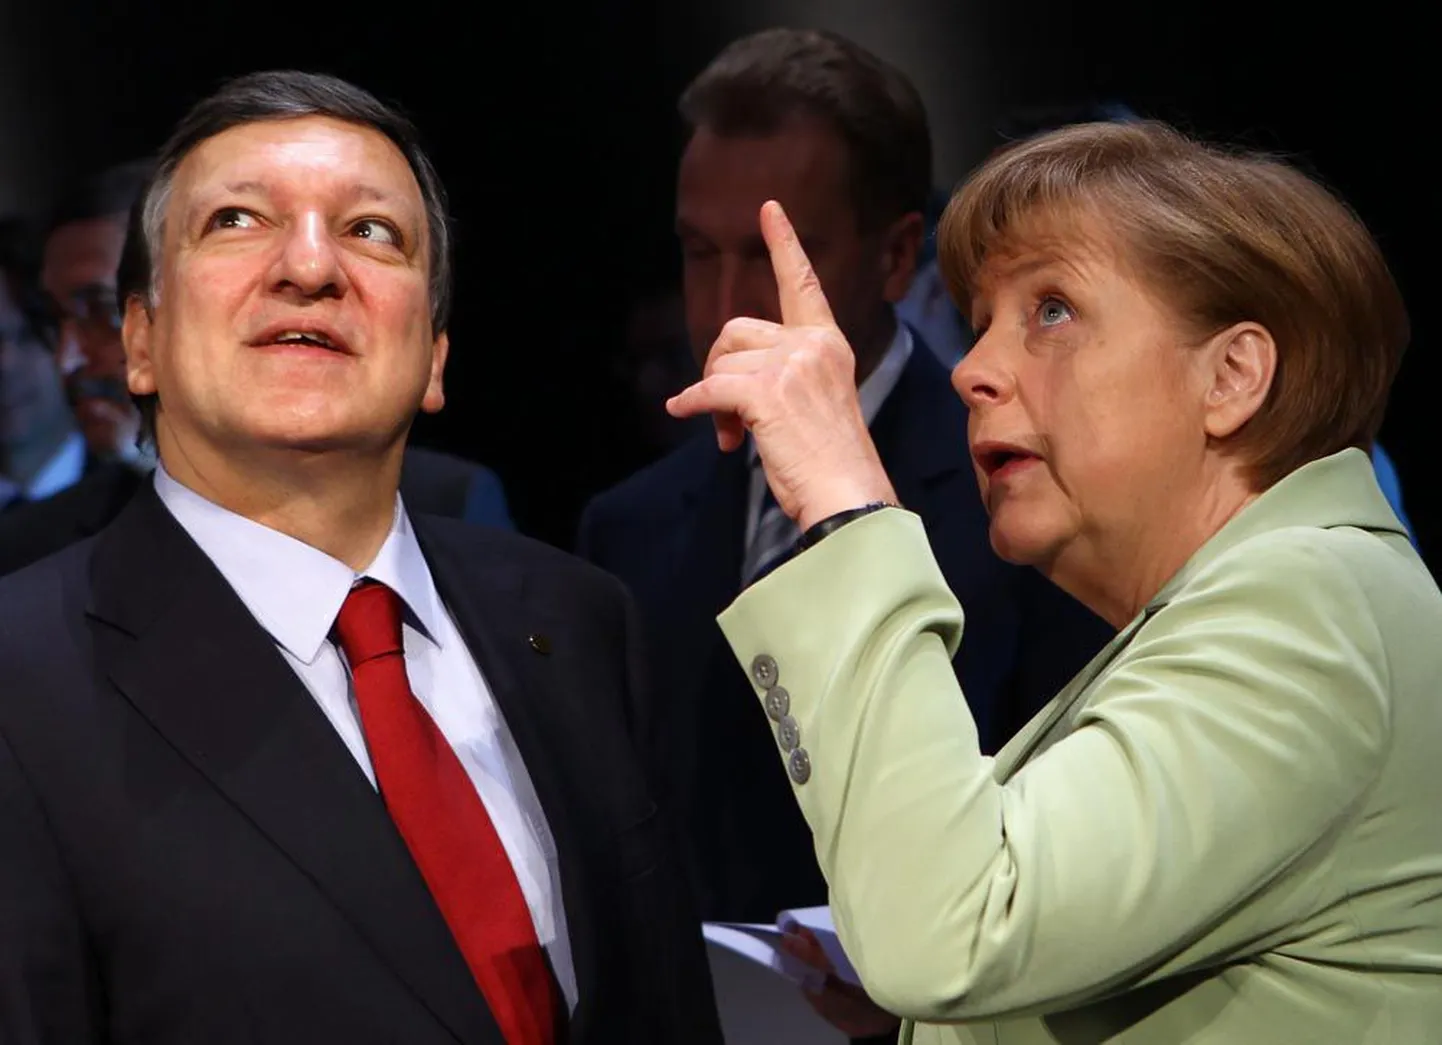 Euroopa Komisjoni president José Manuel Barroso ja Saksamaa kantsler Angela Merkel osalesid eelmisel nädalal Läänemere maade tippkohtumisel. Seni mõnedes küsimustes üsna jäika joont hoidnud Merkel ütles seal, et on valmis arutlema igal teemal.